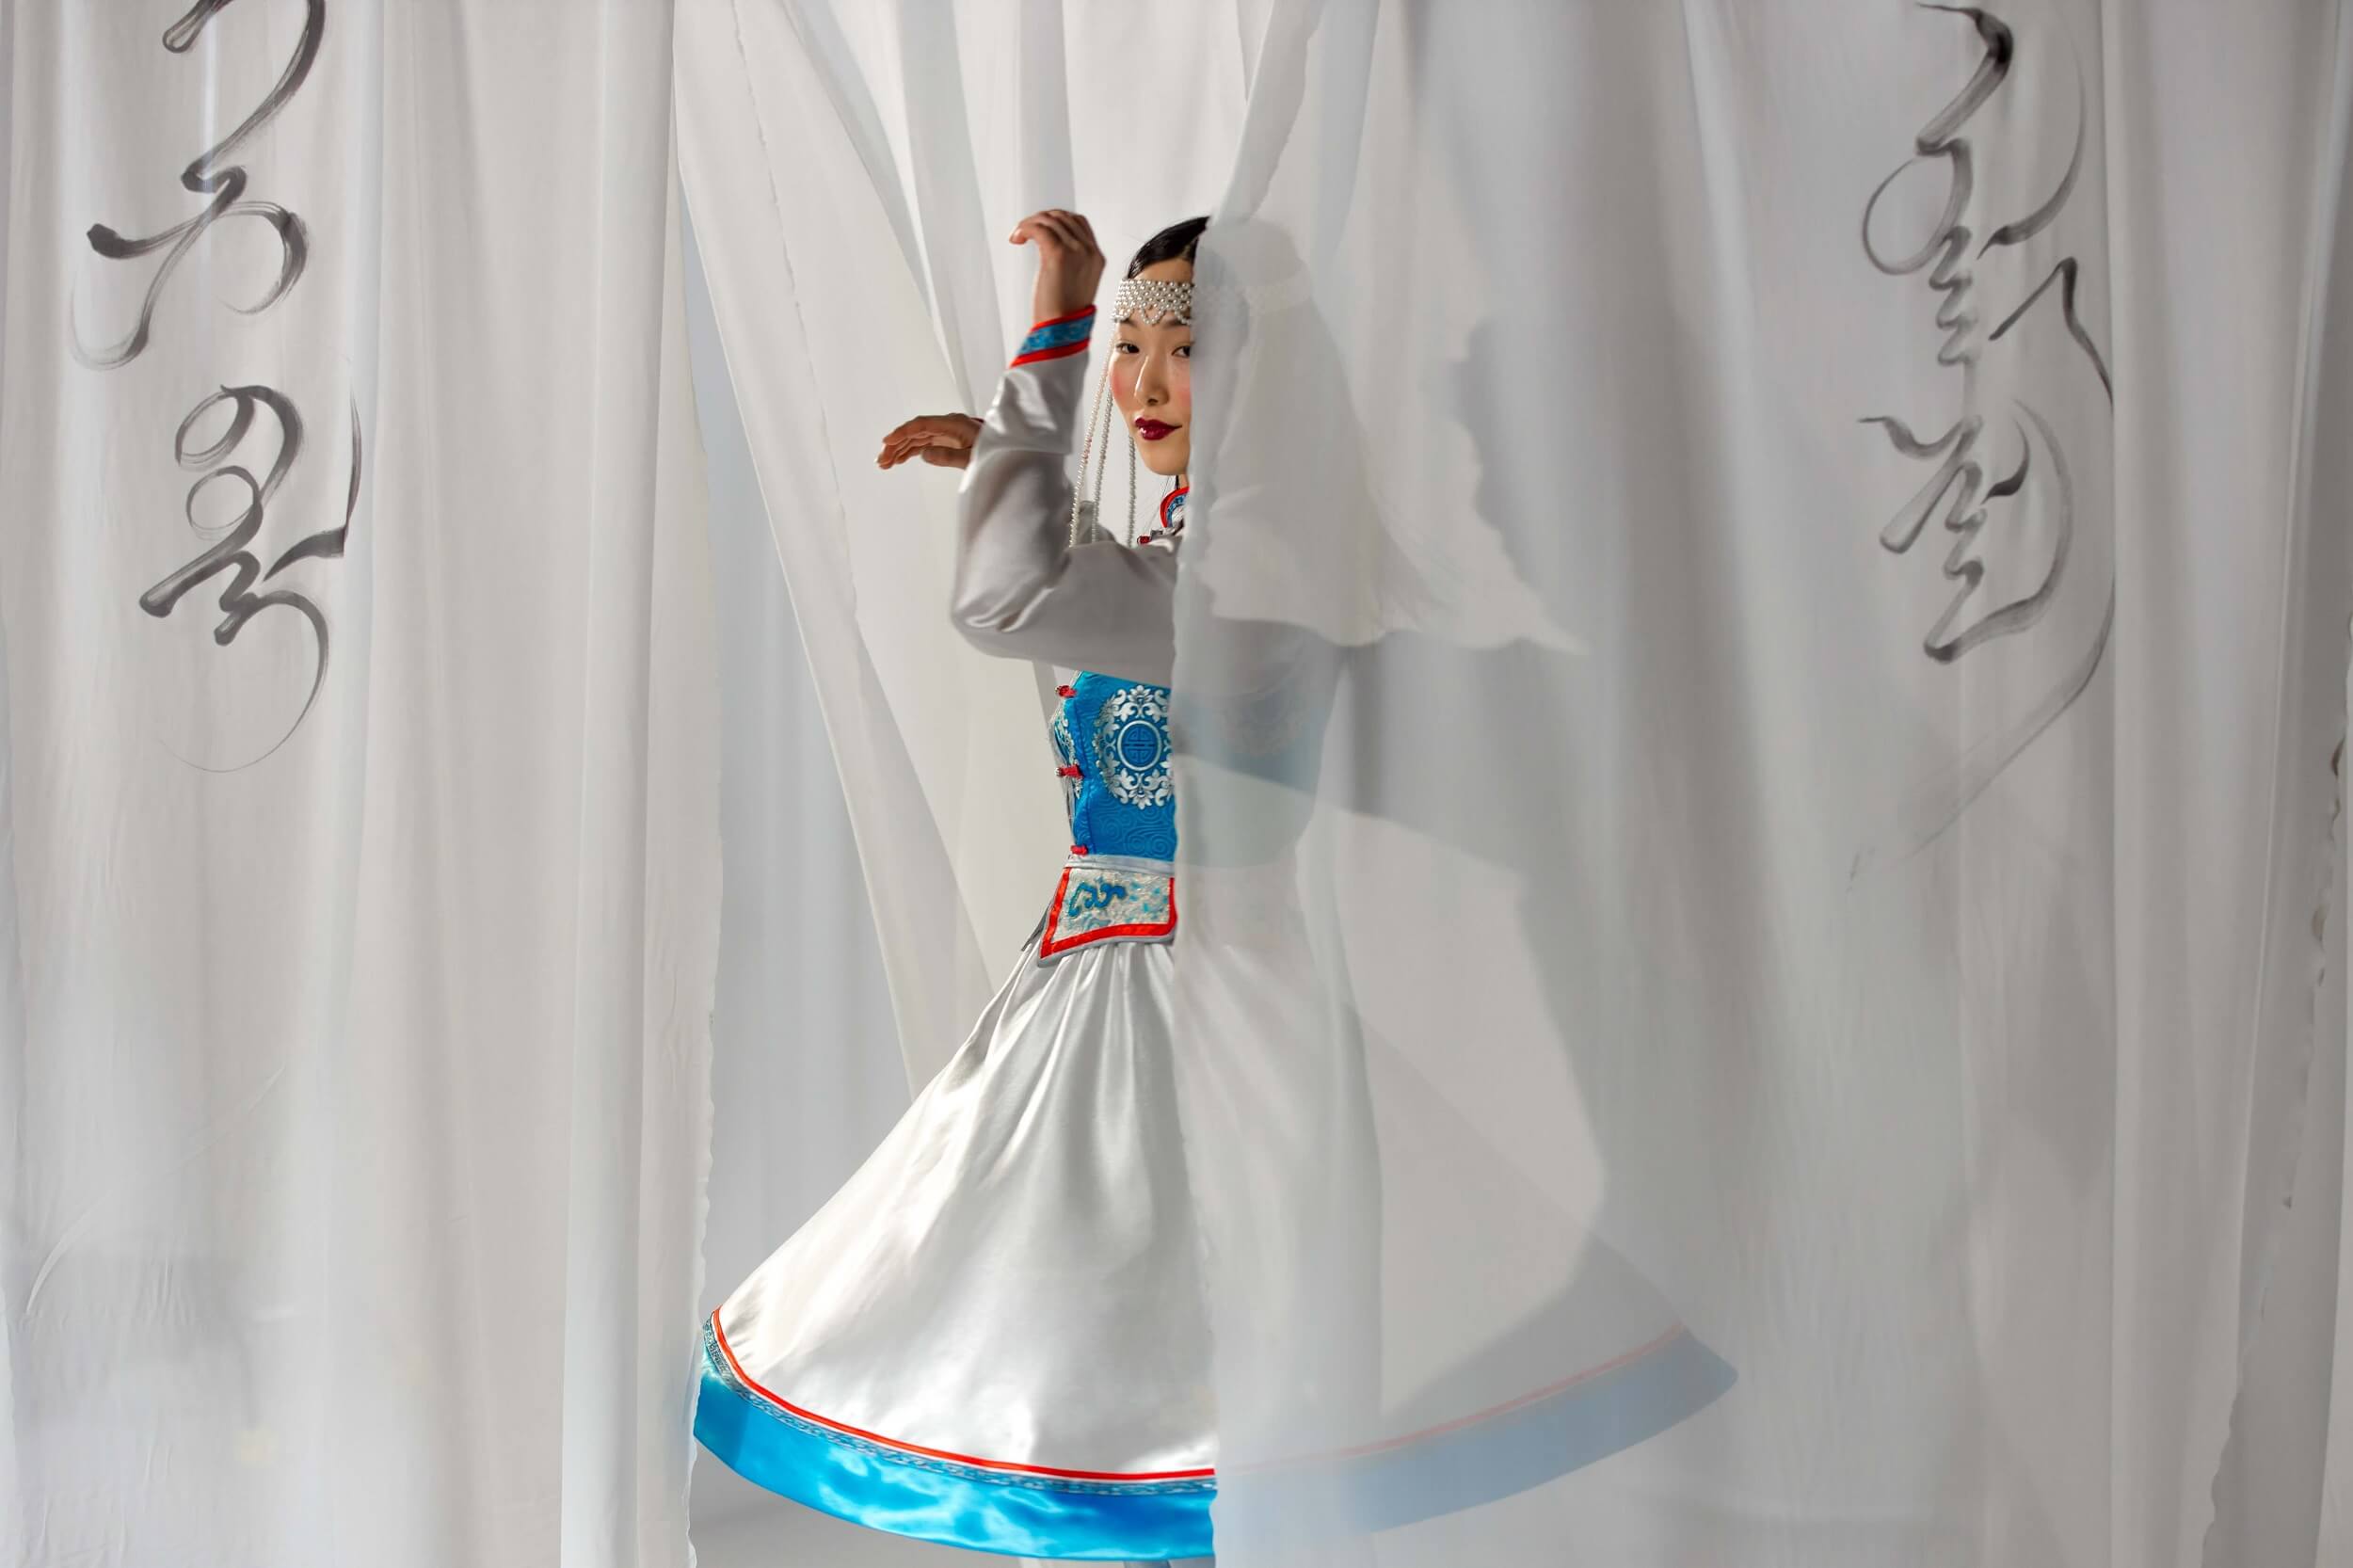 mongolian woman dancing